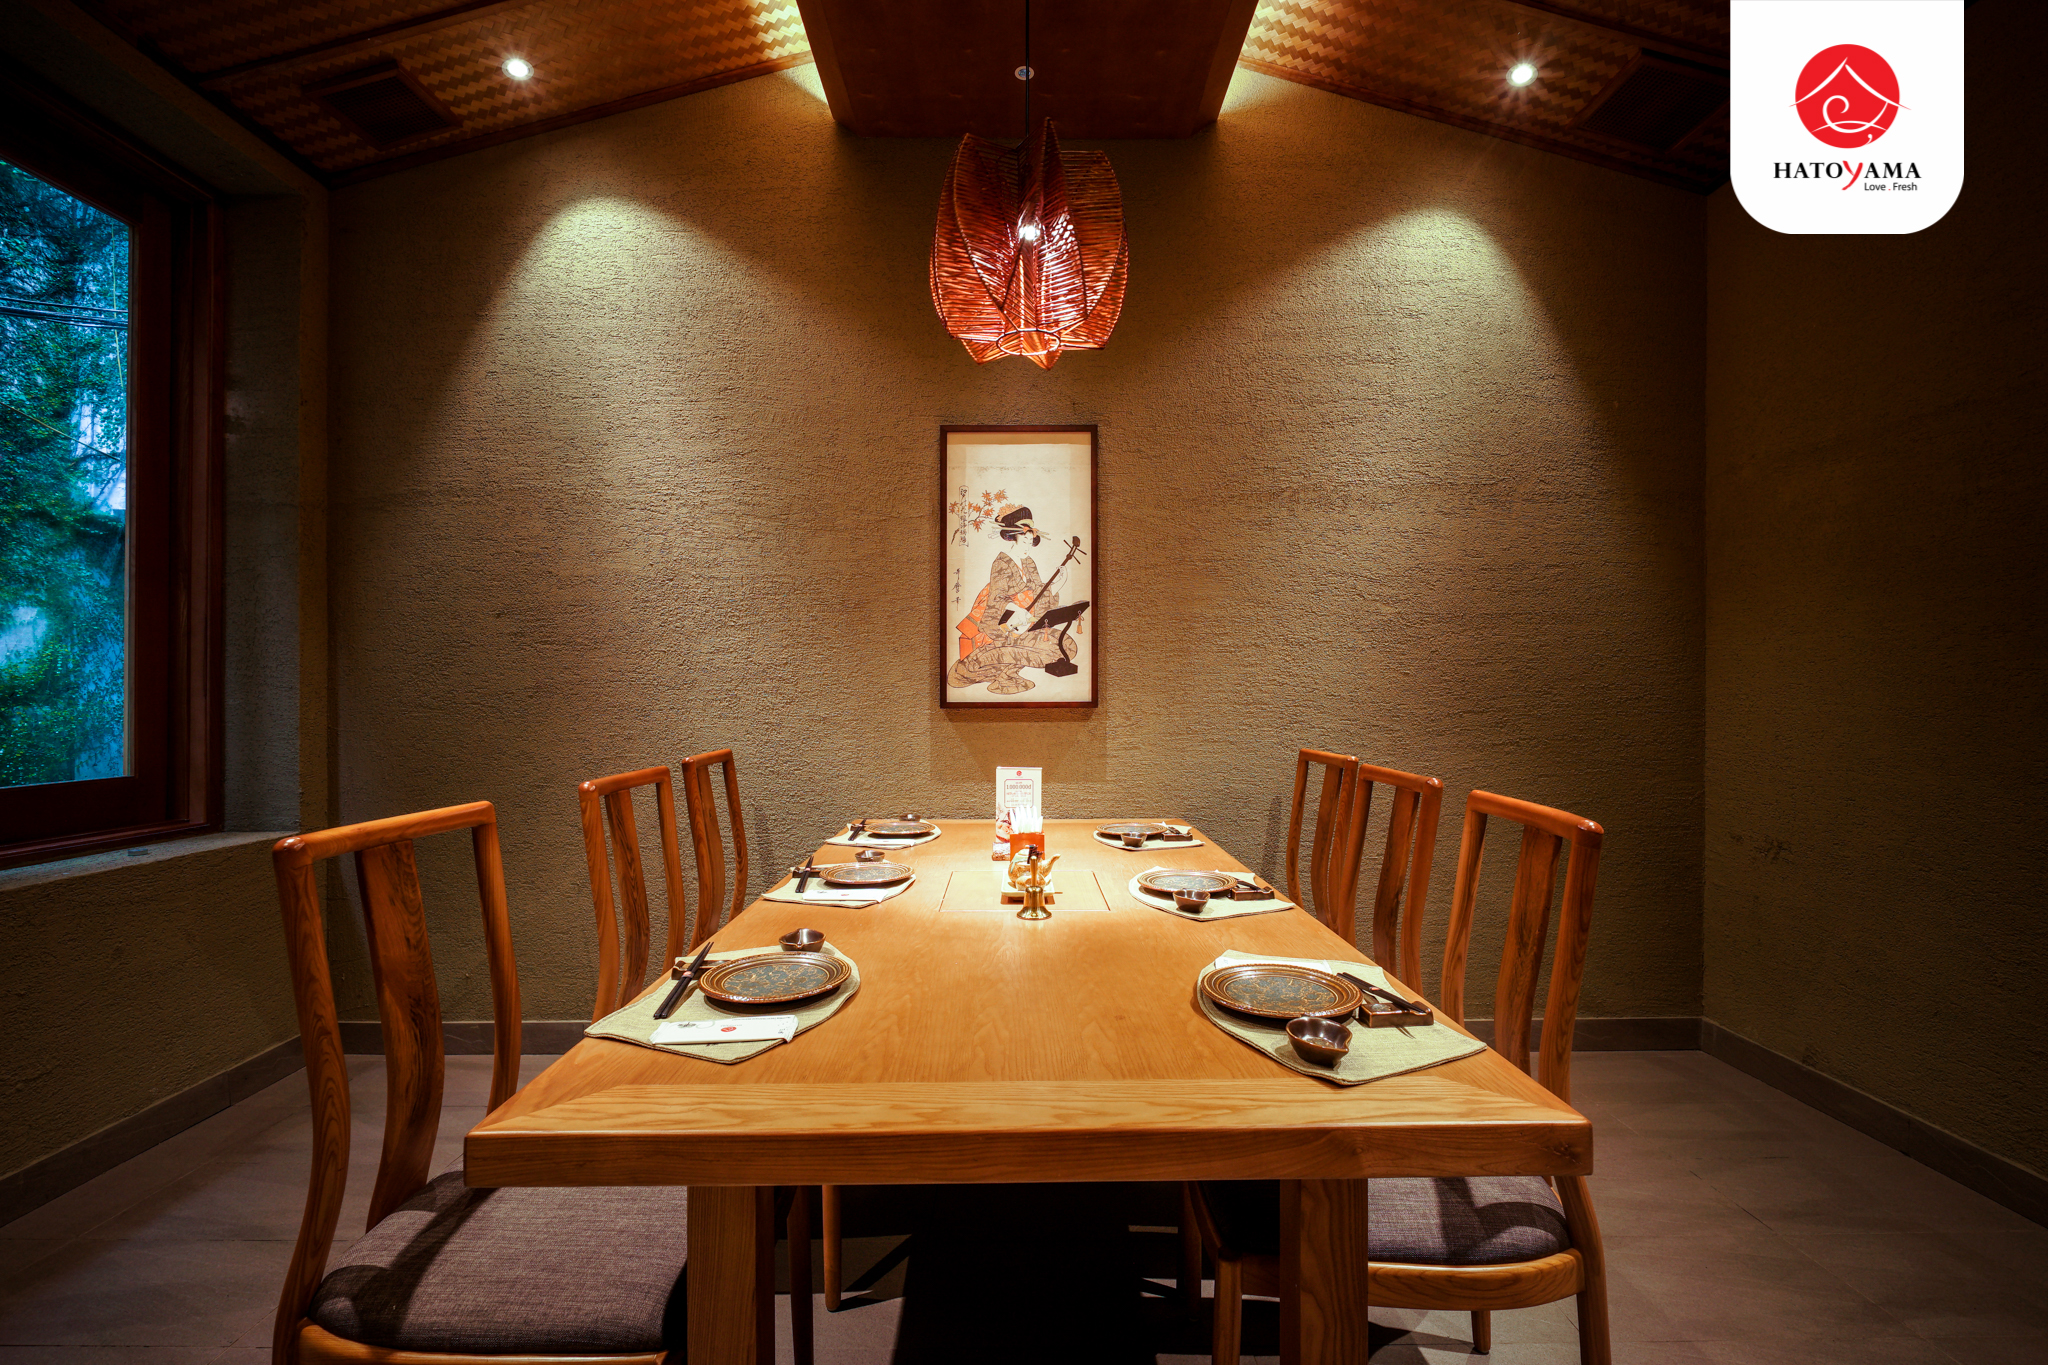 Không gian nhà hàng mang phong cách Nhật Bản và chú trọng sự riêng tư